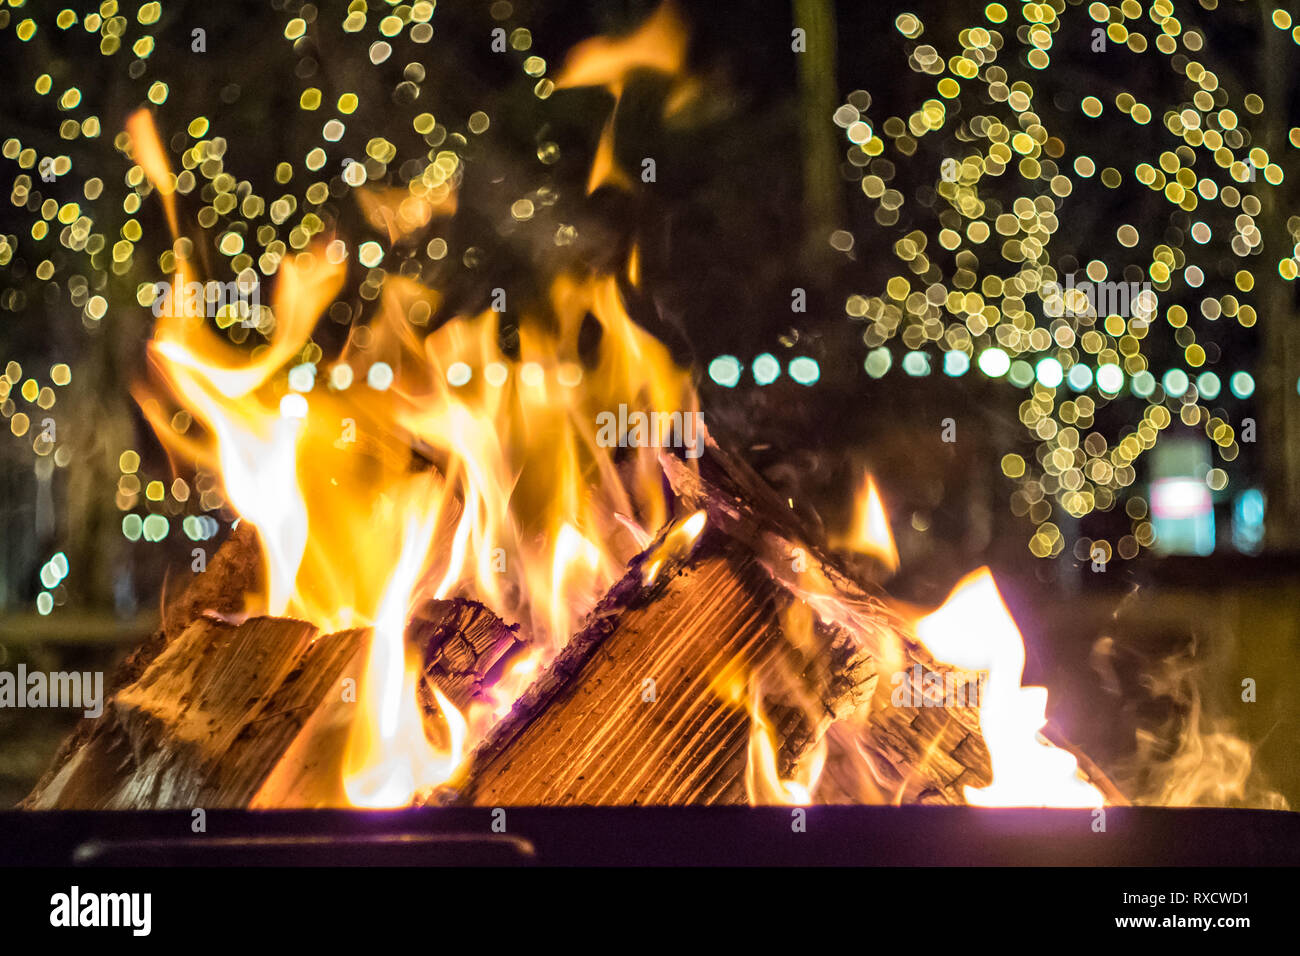 Impressionen vom Weihnachtsmarkt à Pfaffenhofen - brennendes Holz, Feuerstelle zum Aufwärmen Banque D'Images